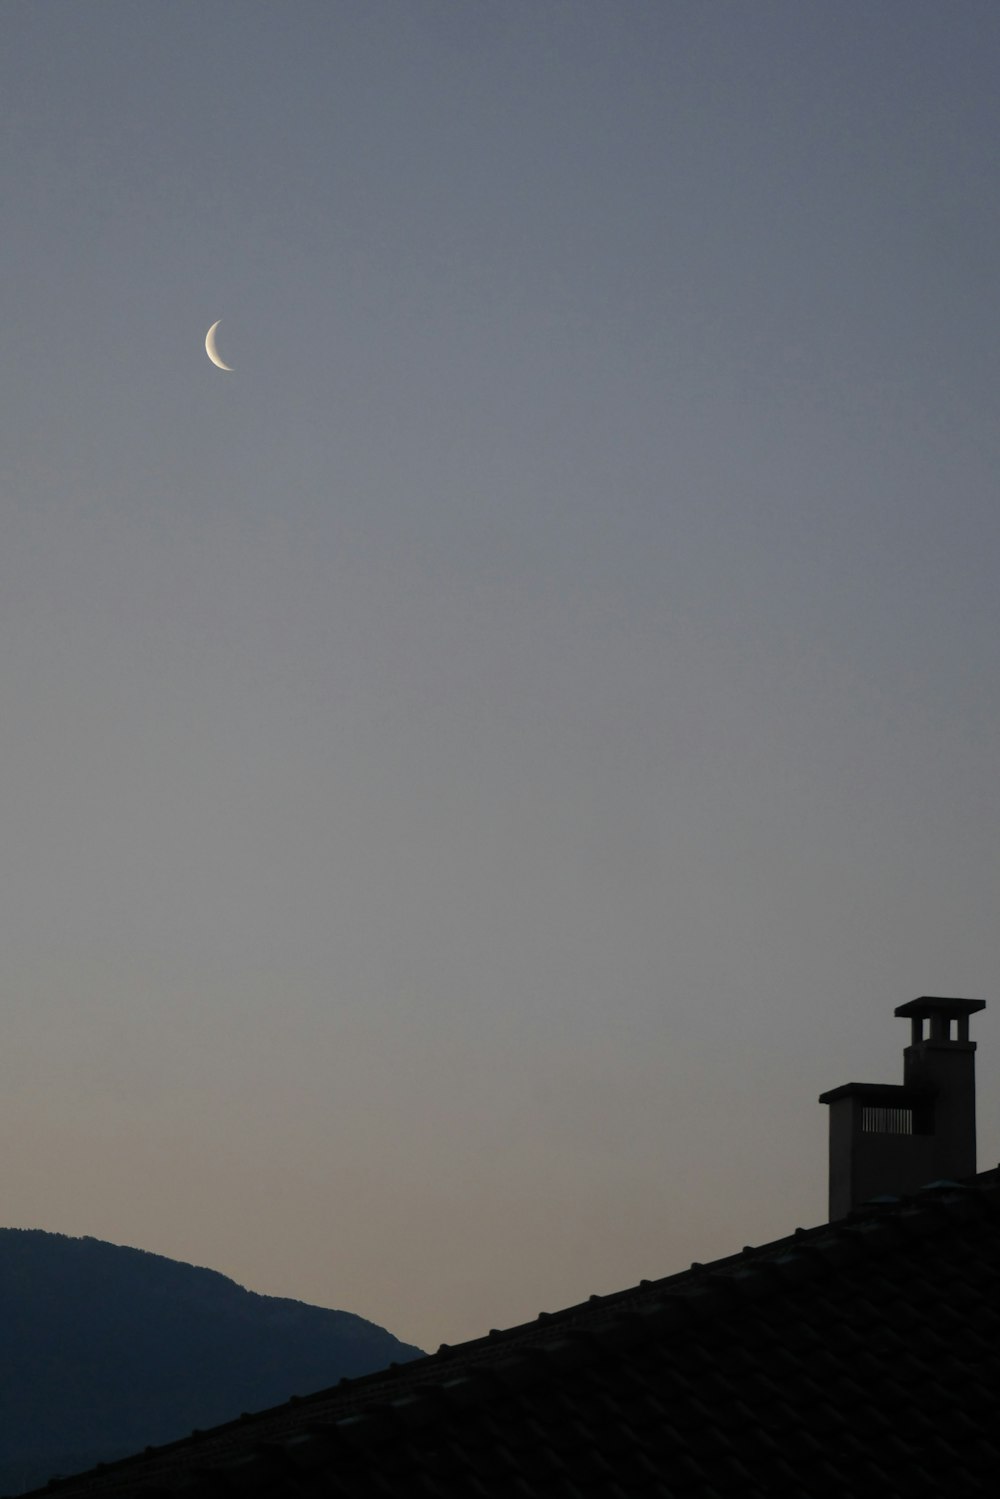 a lua é vista no céu sobre um telhado